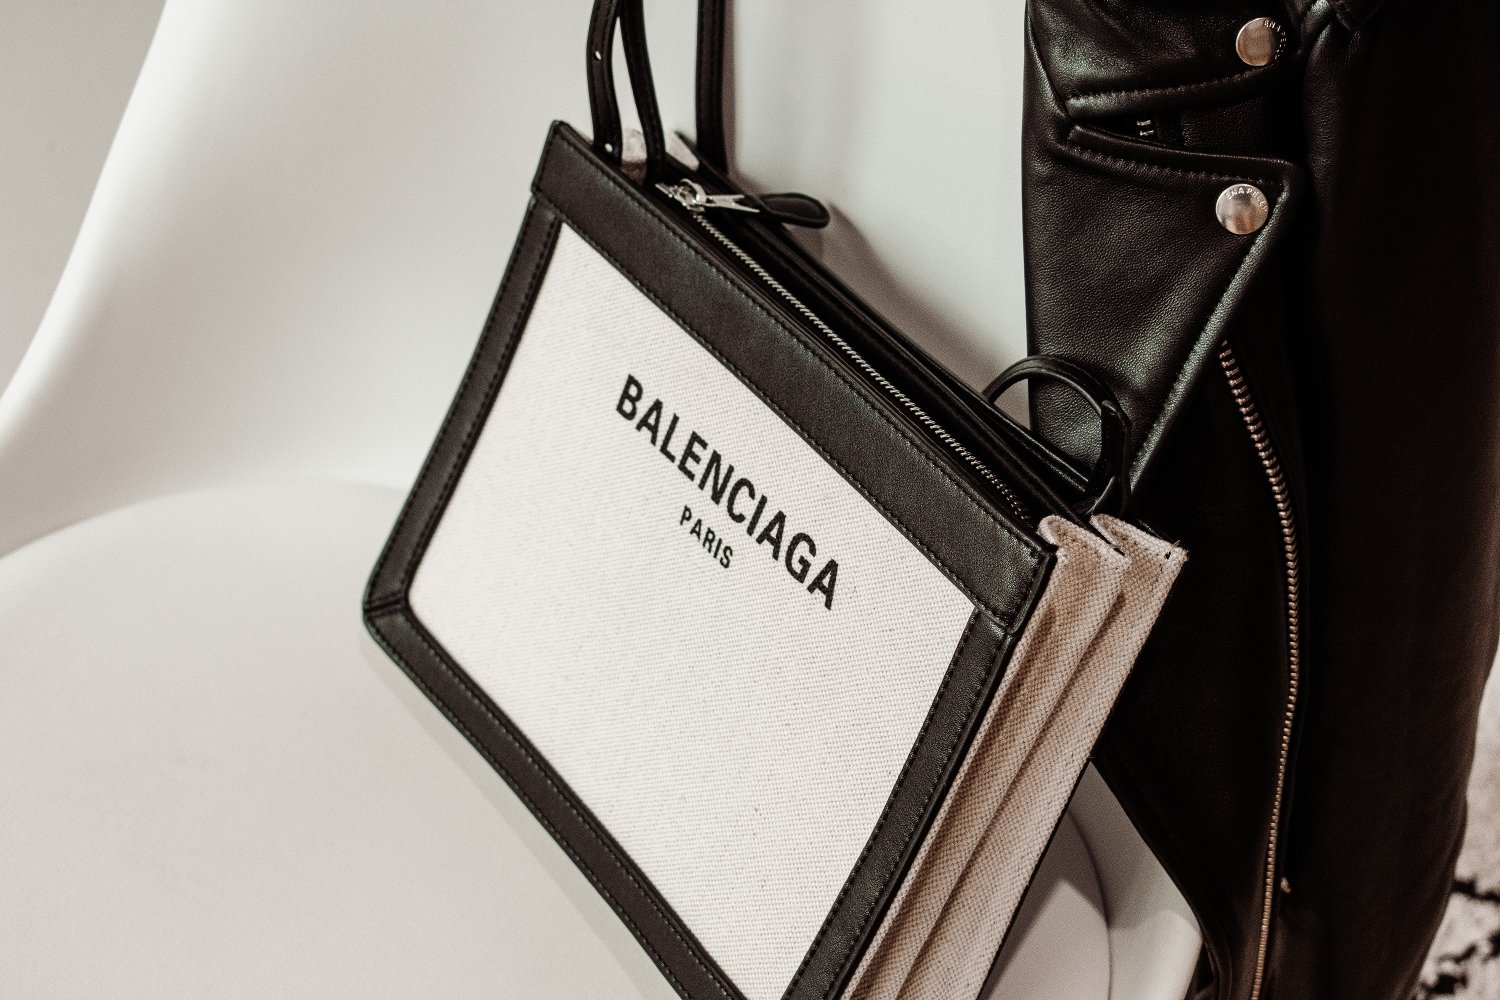 Balenciaga Tasche, die es in Black Friday Angeboten für Markenkleidung günstiger bei Vestiaire Collective geben kann